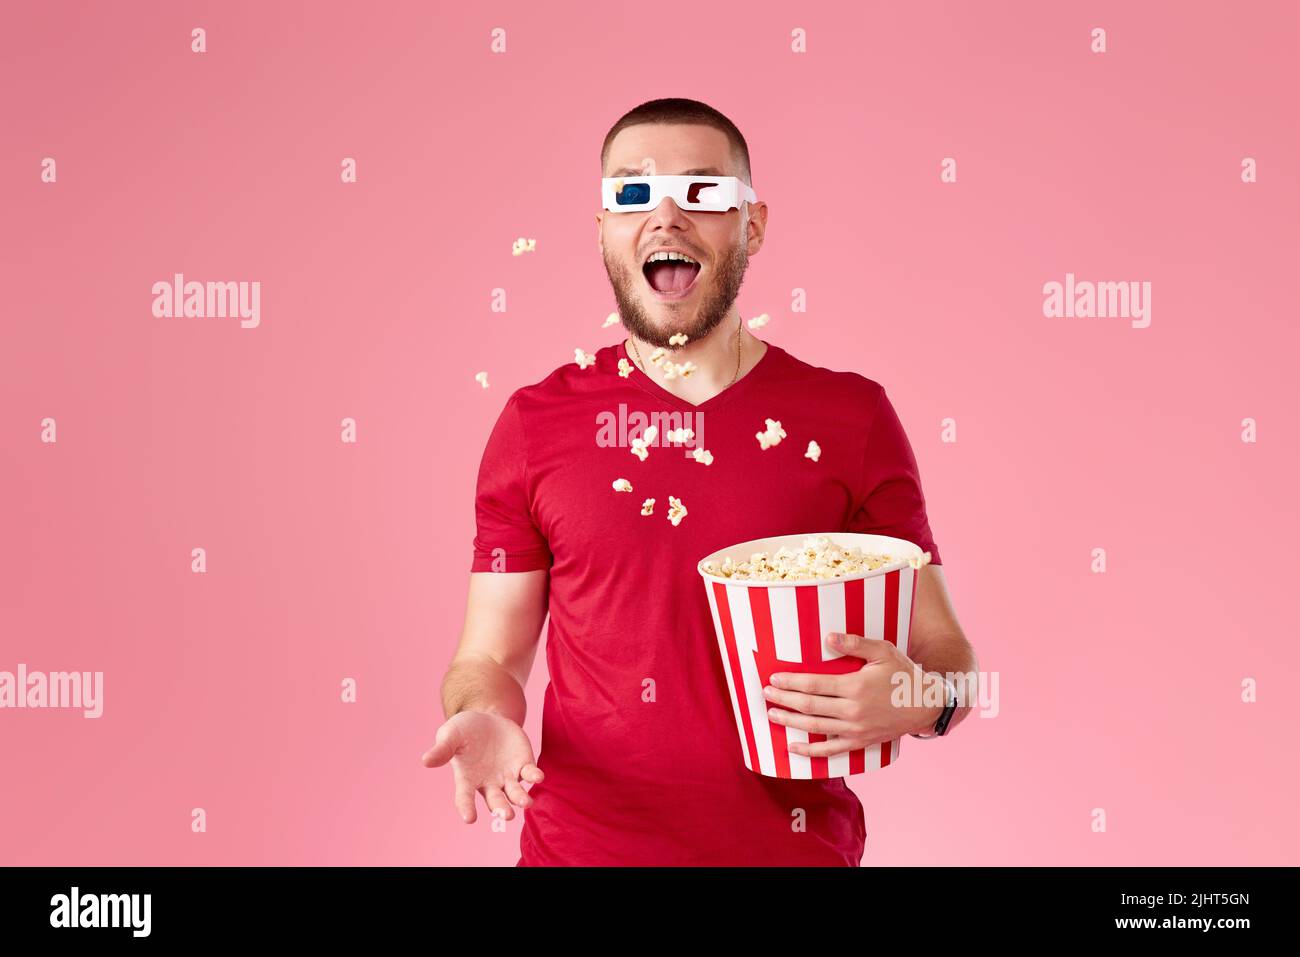 giovane uomo in 3d bicchieri gettando e mangiando popcorn Foto Stock